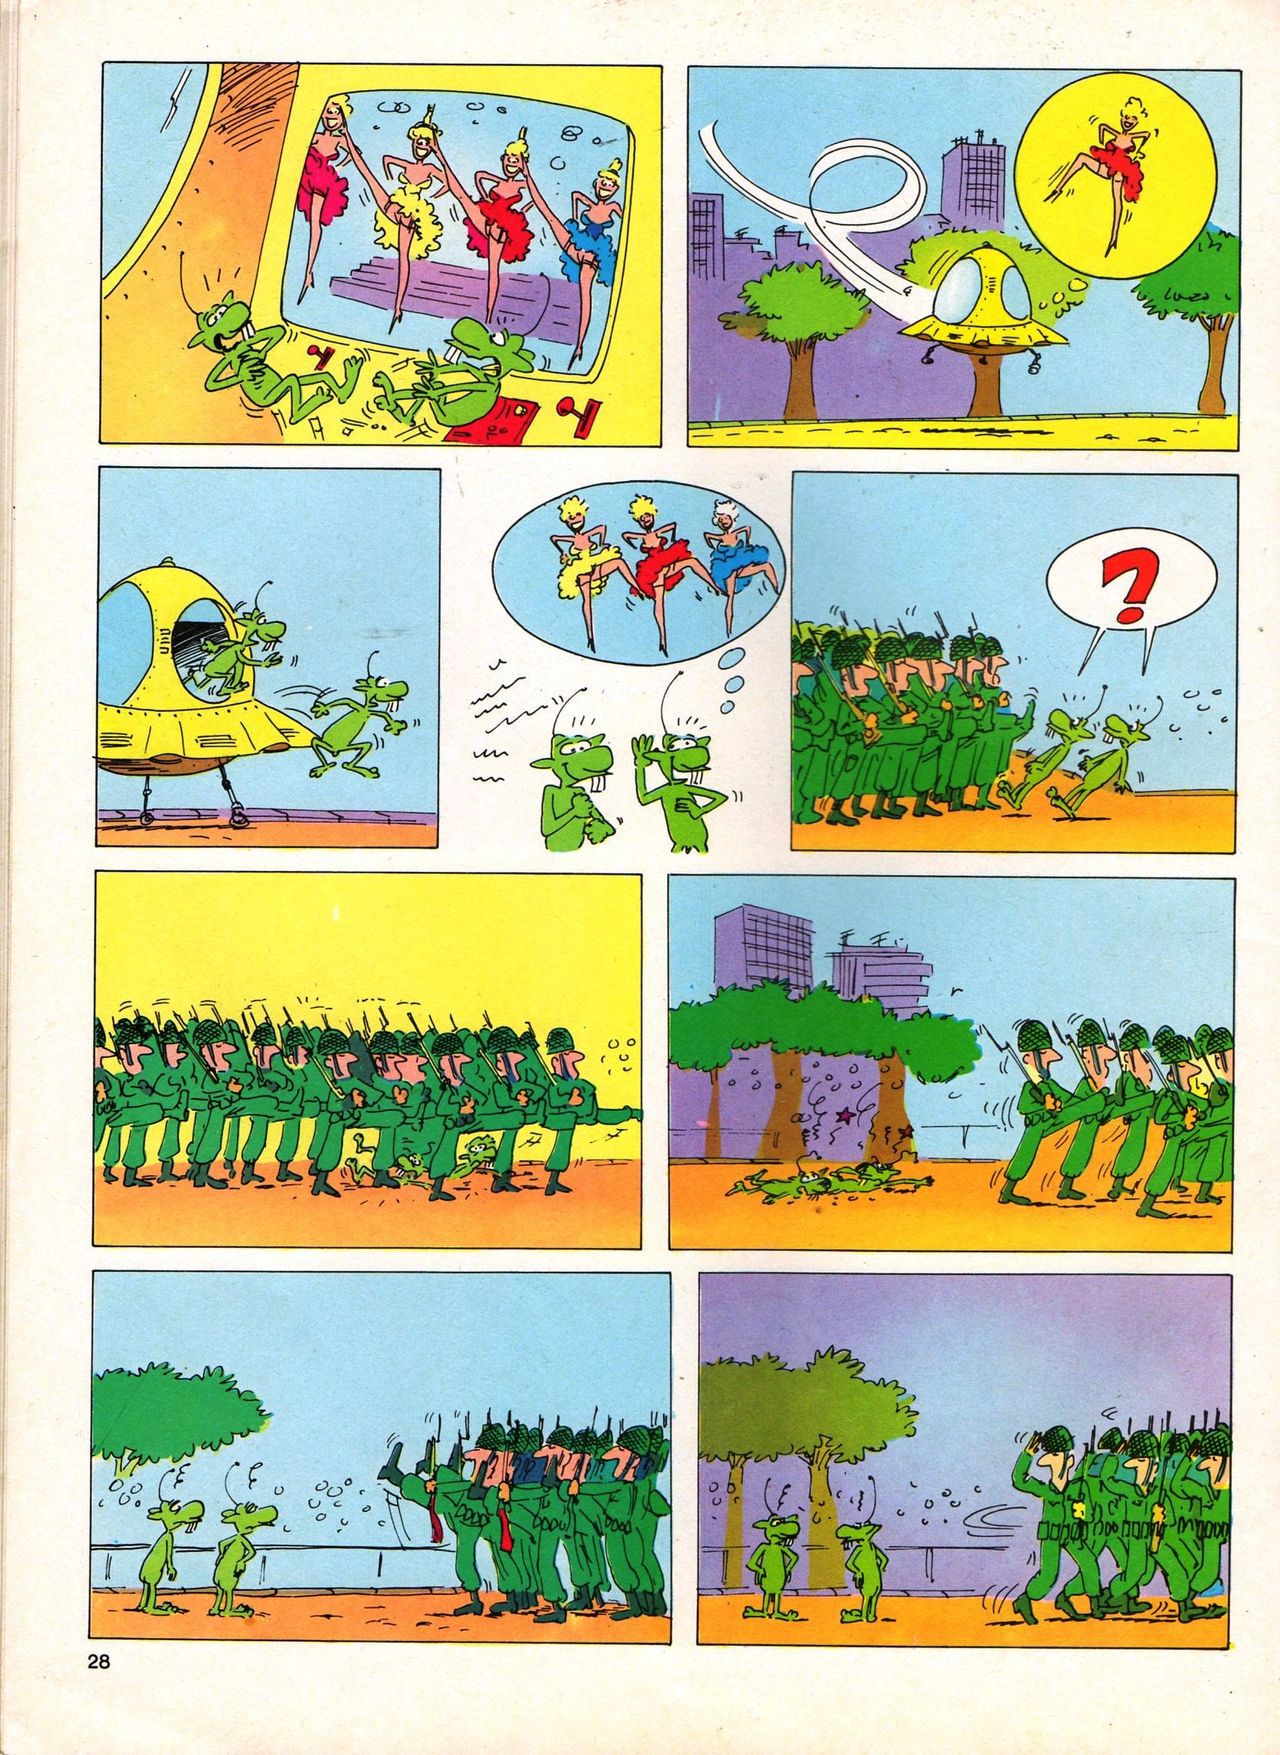 Het Is Groen En Het.. - 04 - Mag Ik Die Ballen.. OH, PARDON! (Dutch) Een oude humoristische serie van Pat Mallet 28